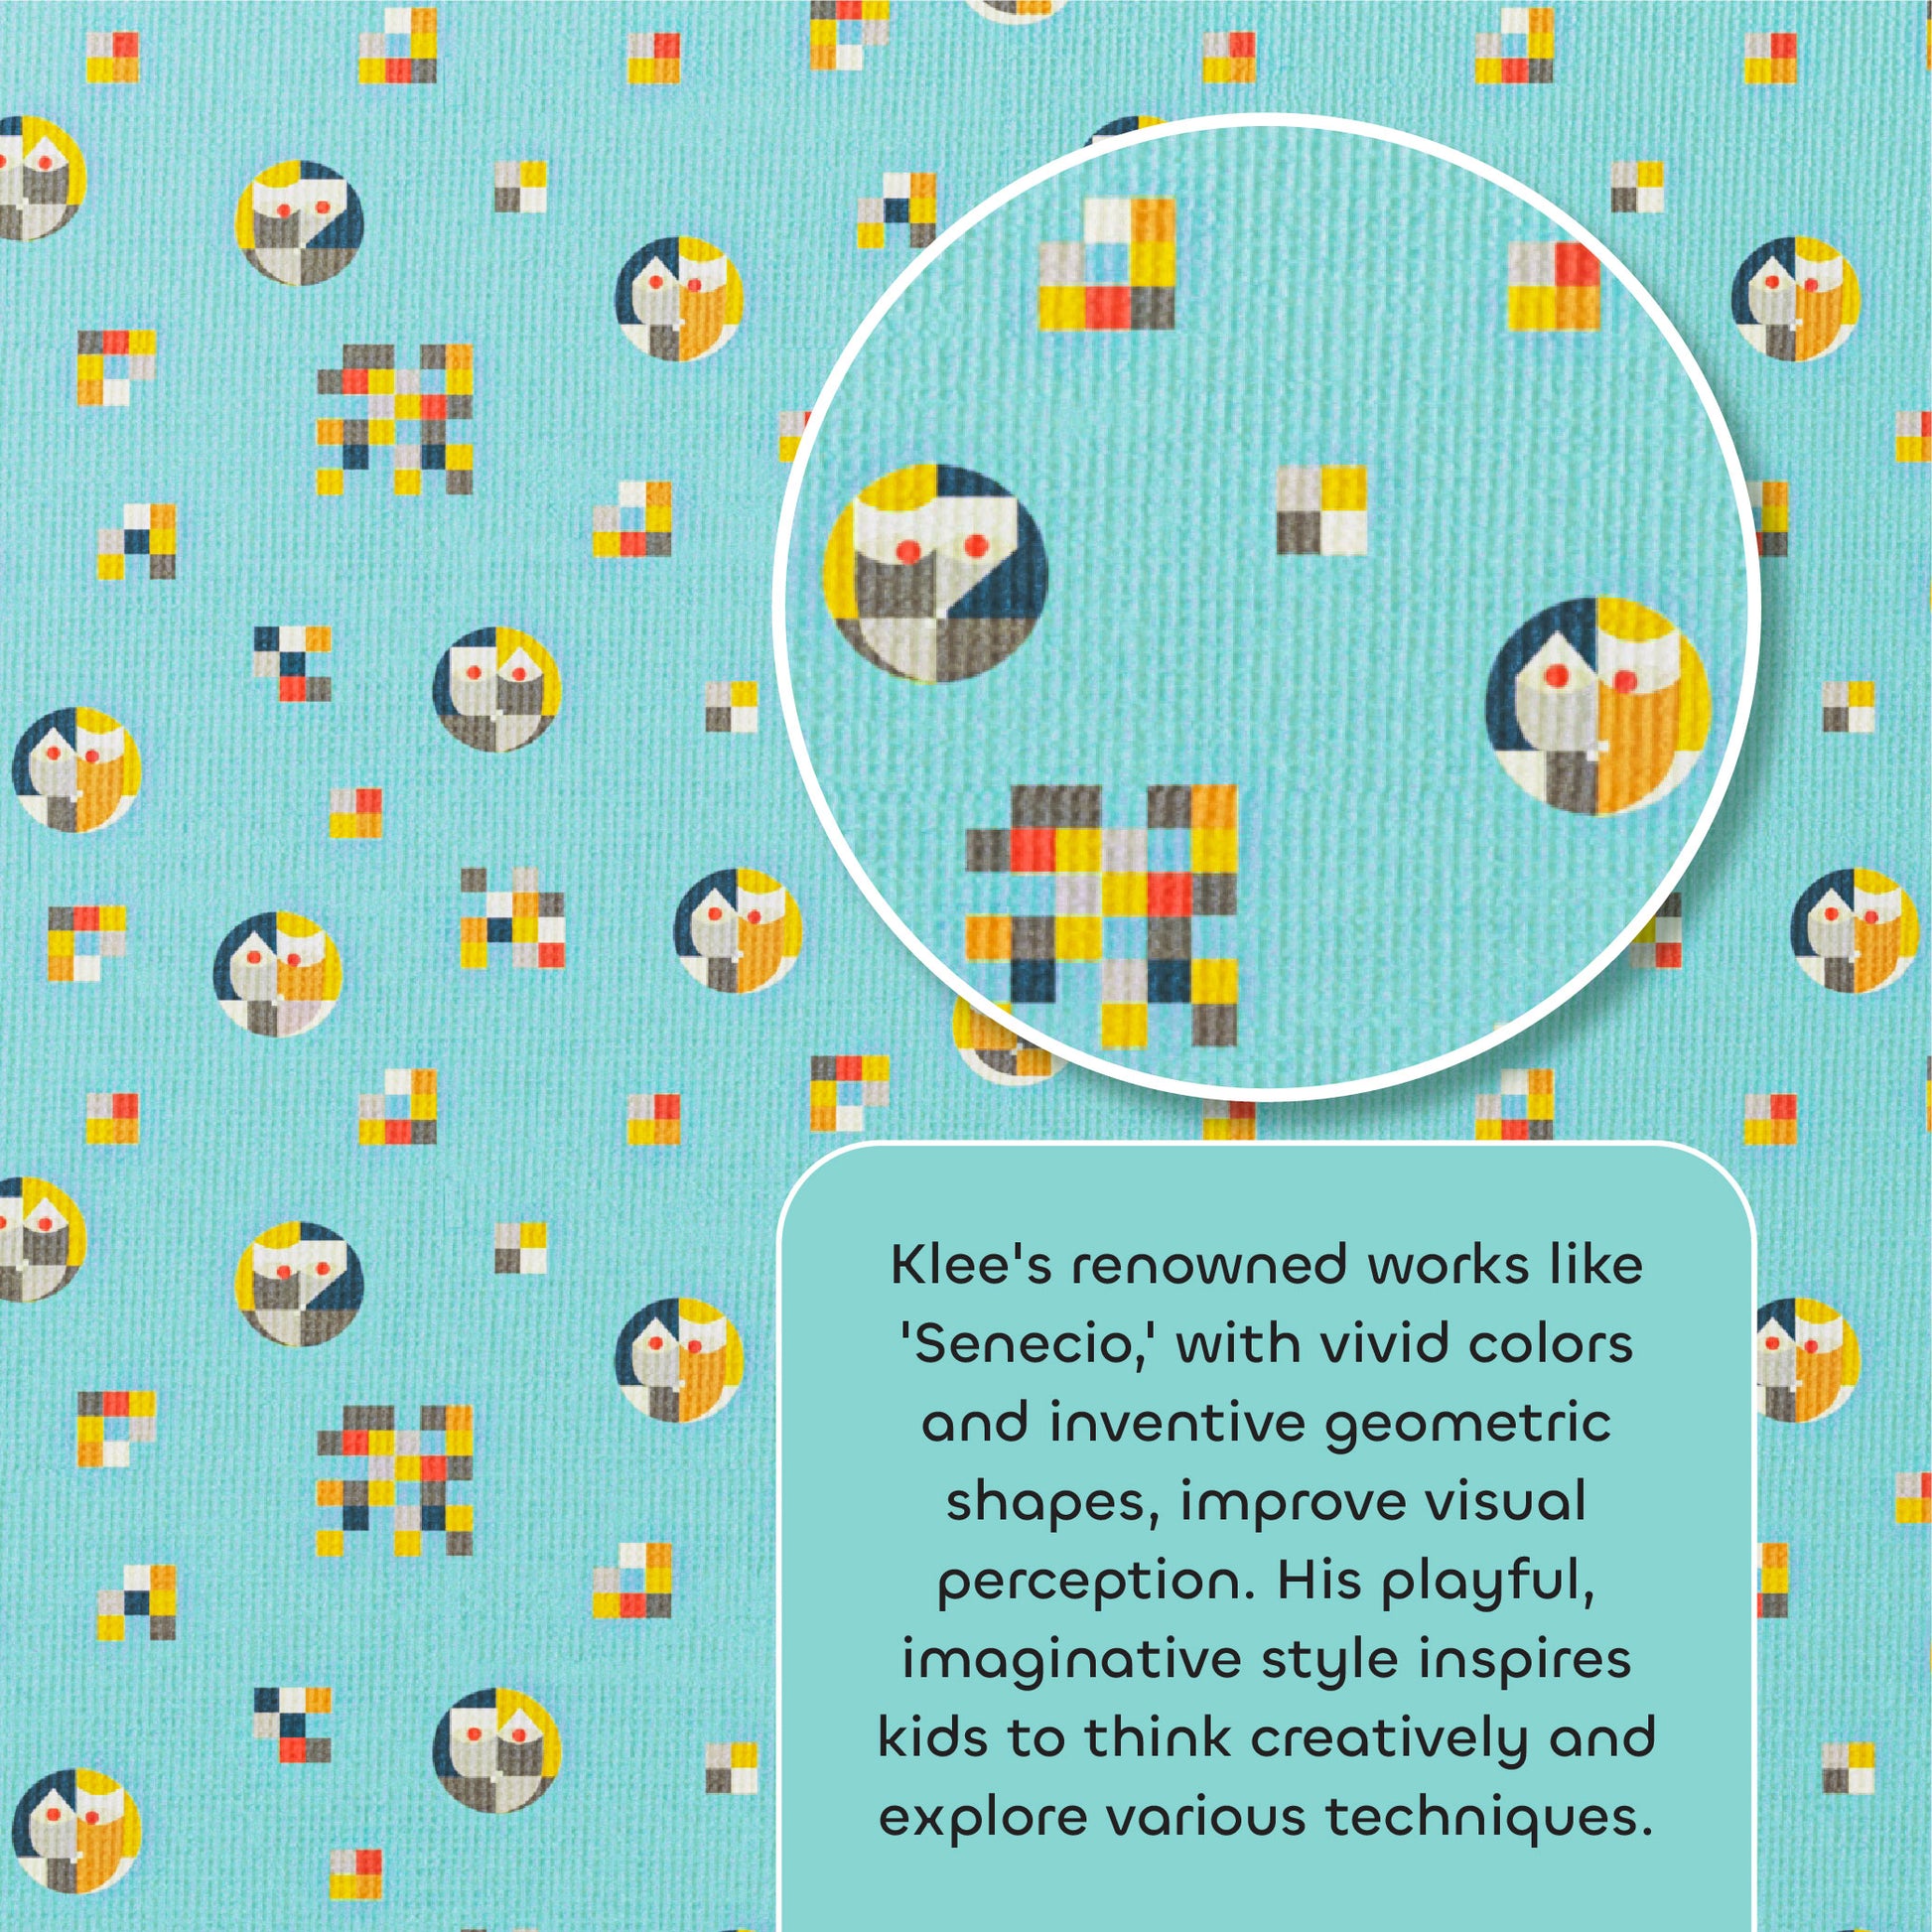 media_gallary Klee’s Kaleidoscope, Single Bedsheet 5